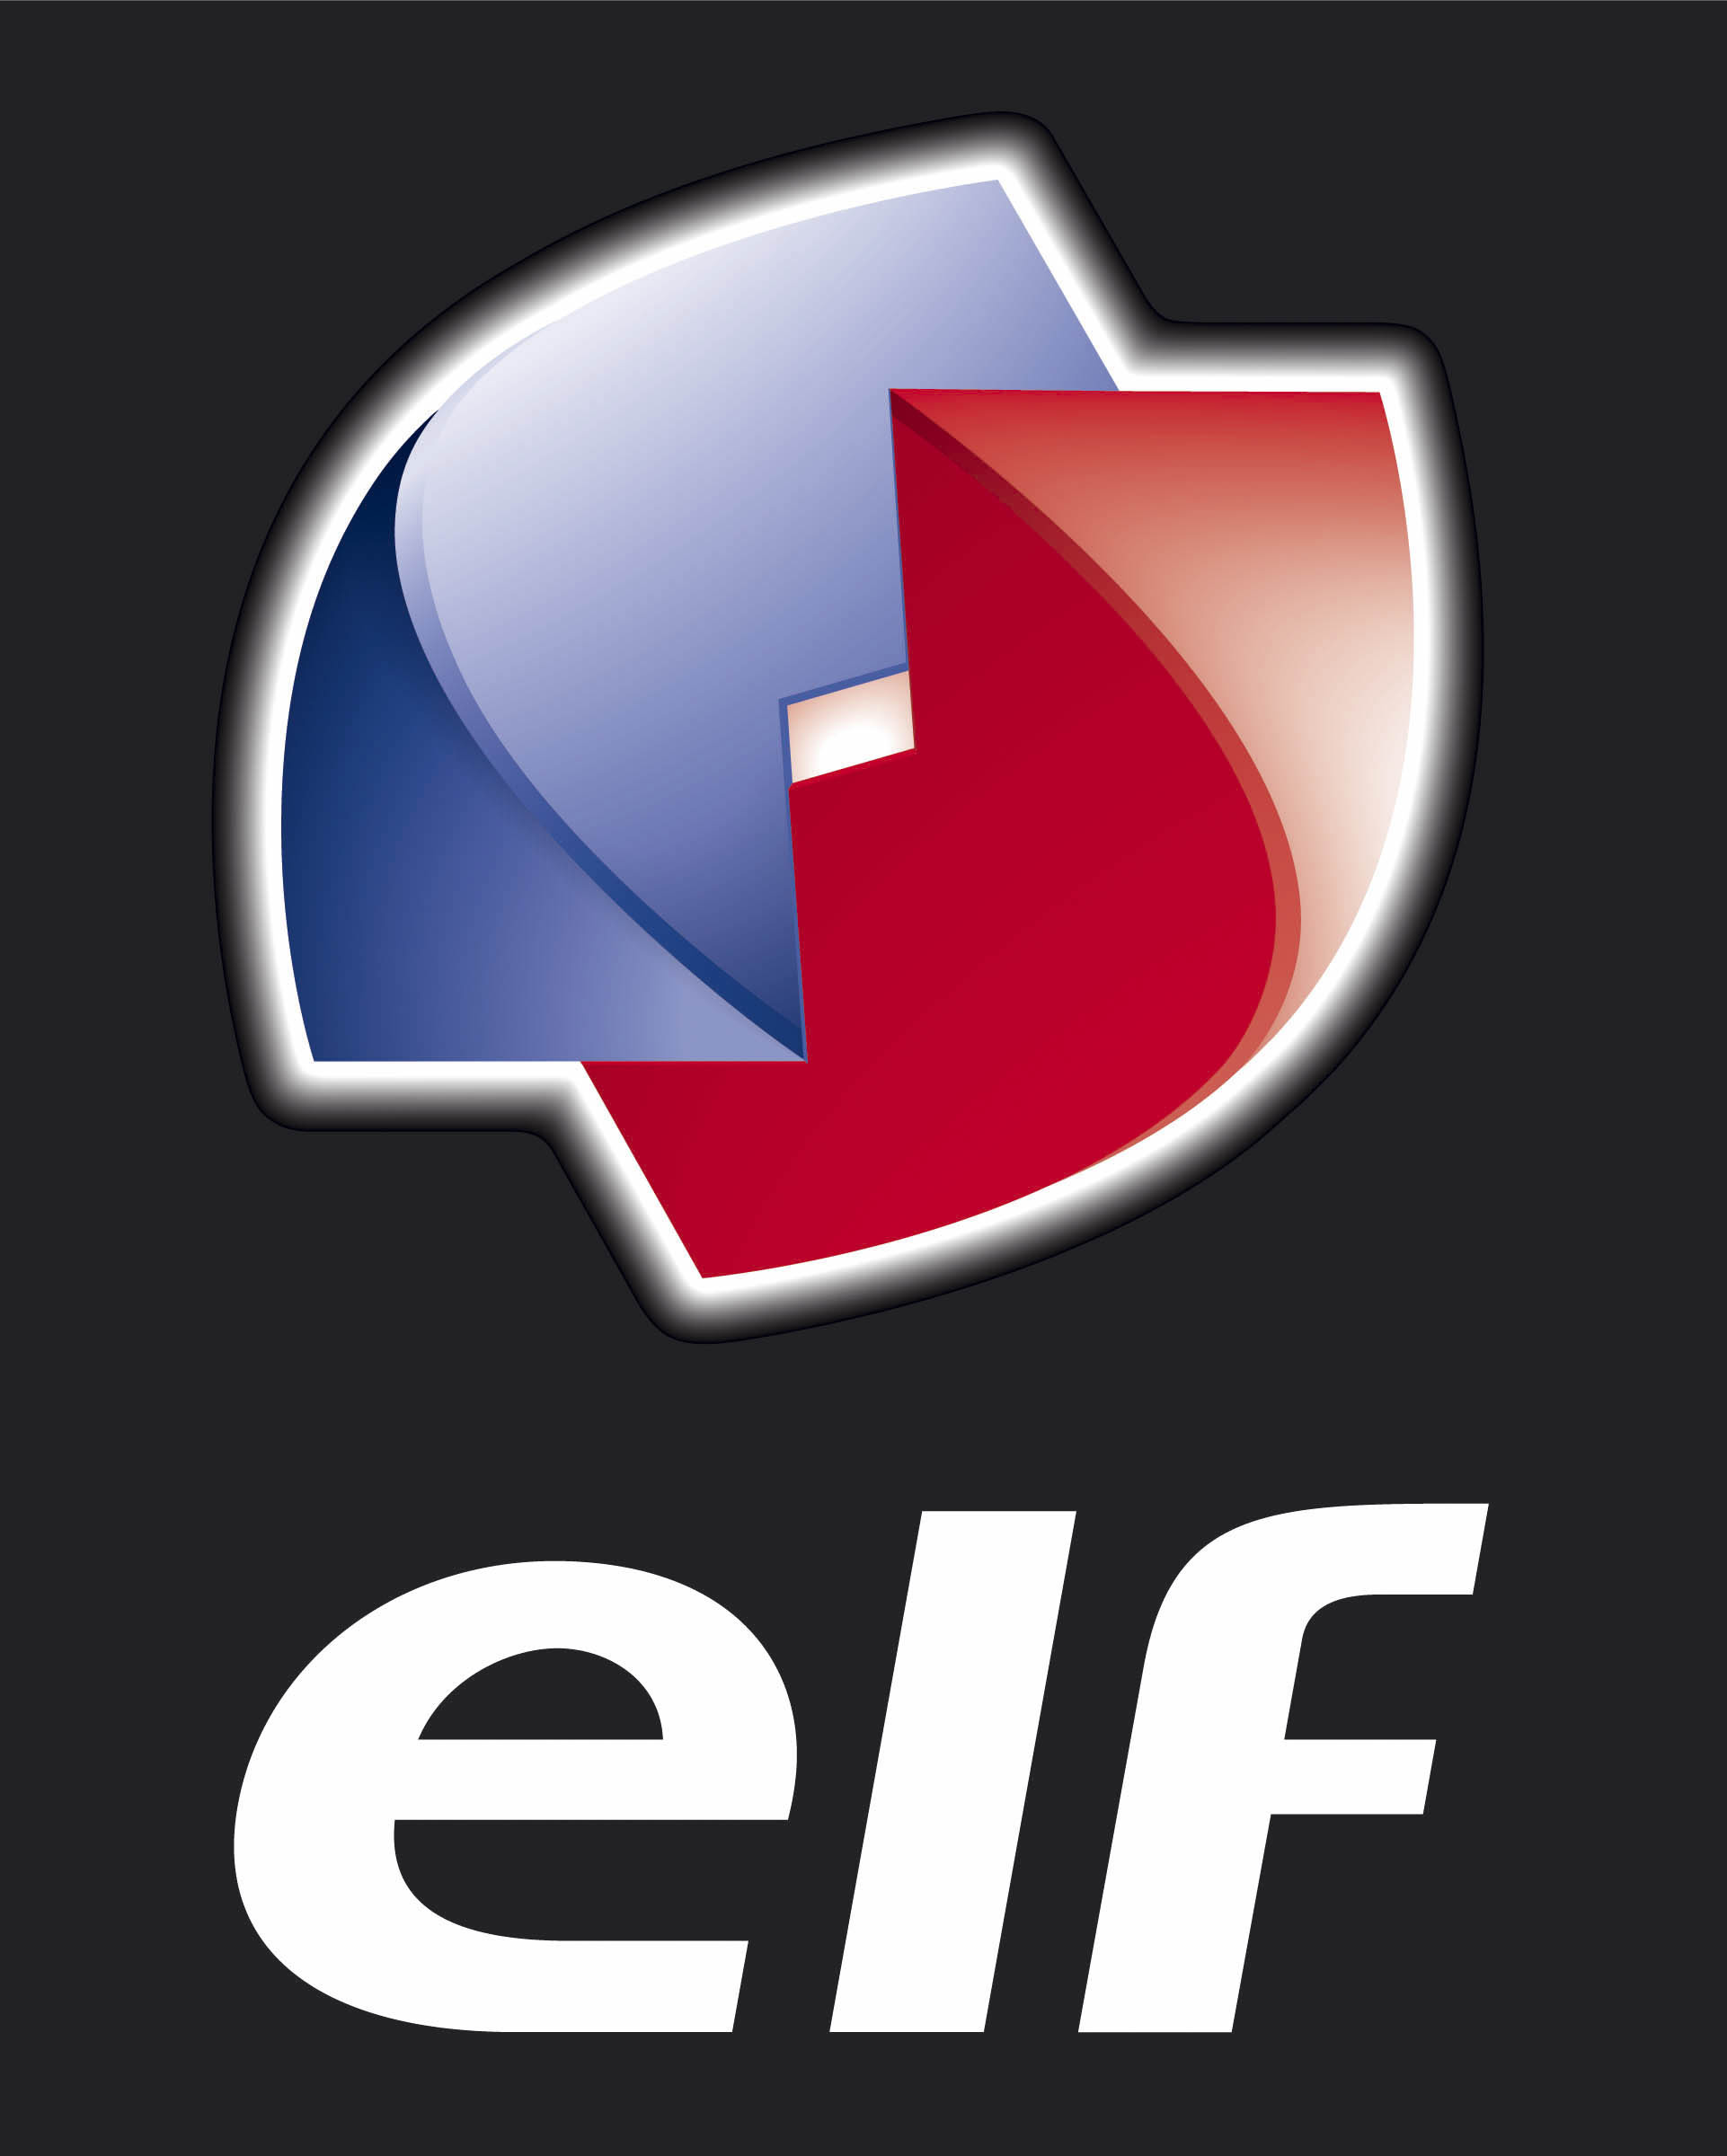 Elf logo